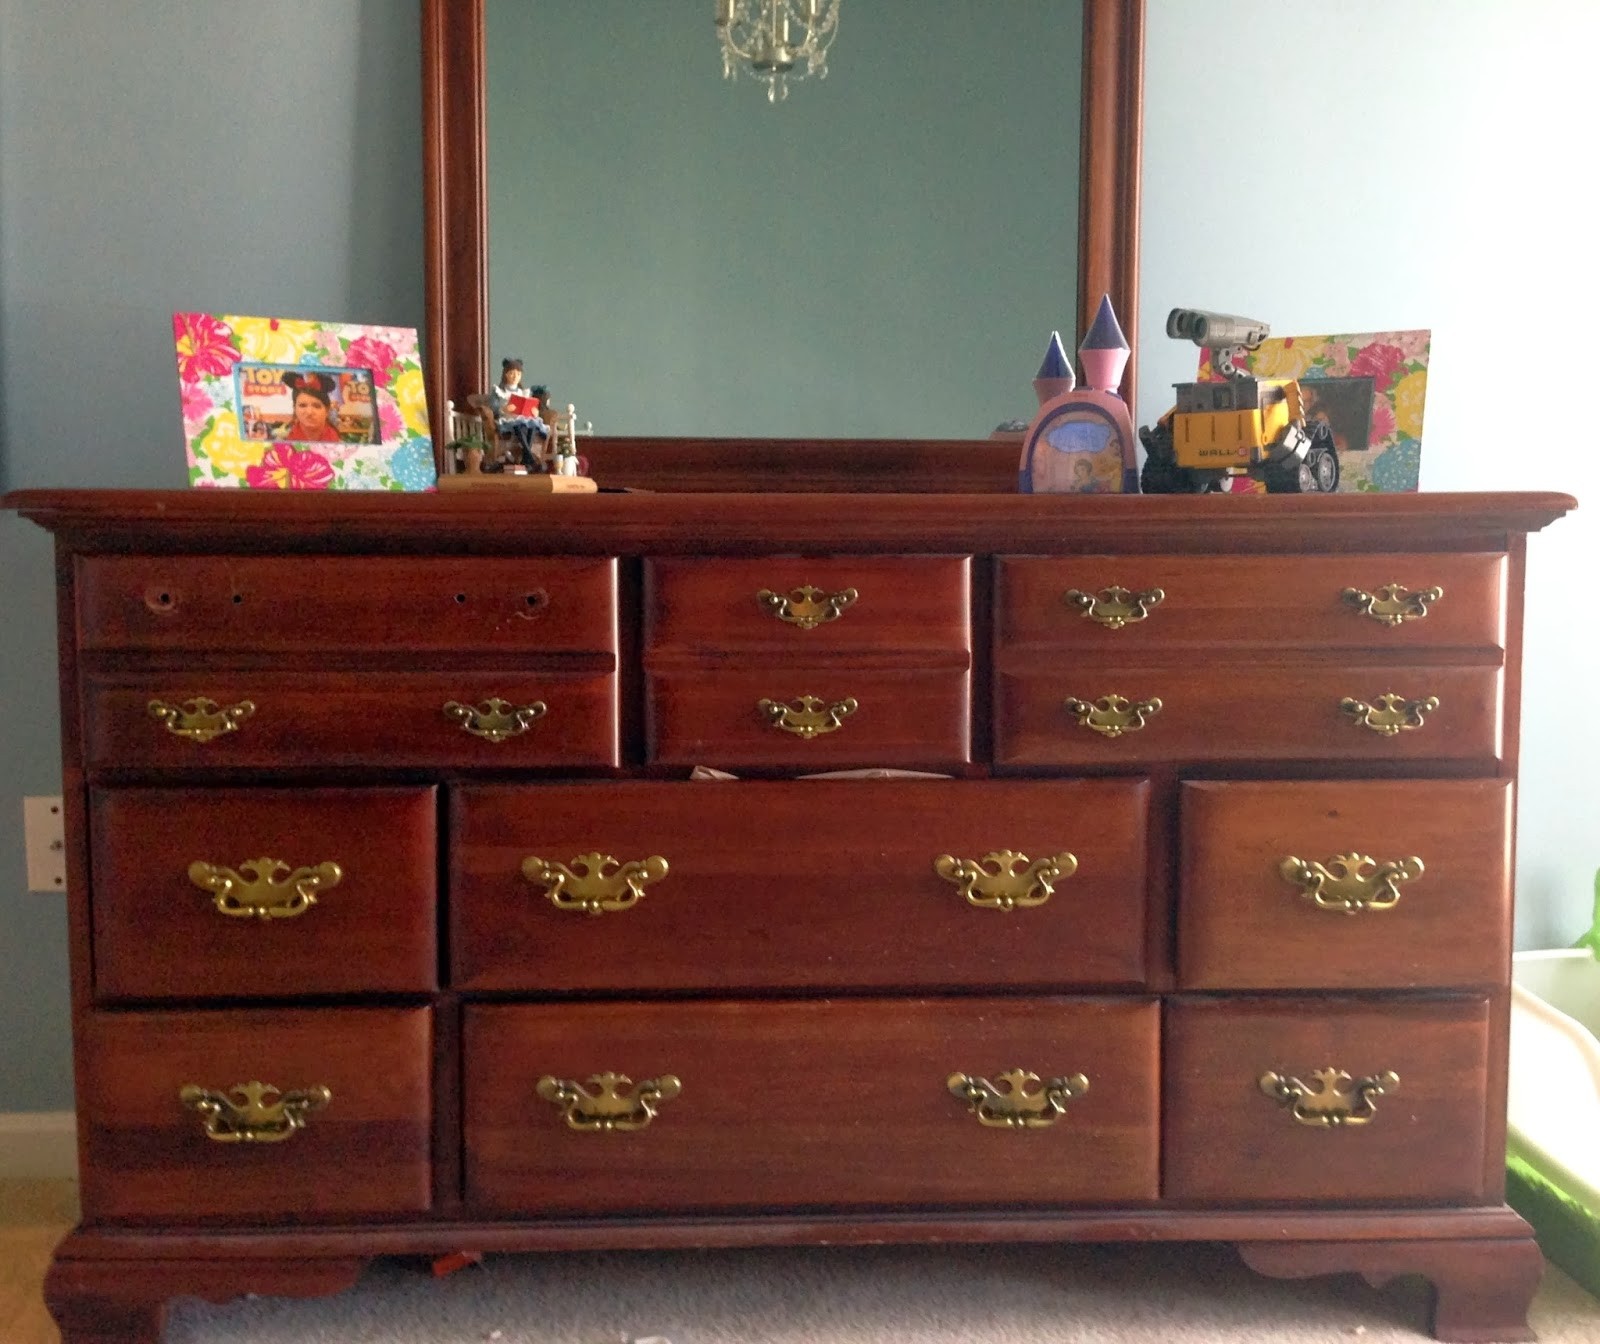 Many unique dresser drawer pulls for kids interior bedroom